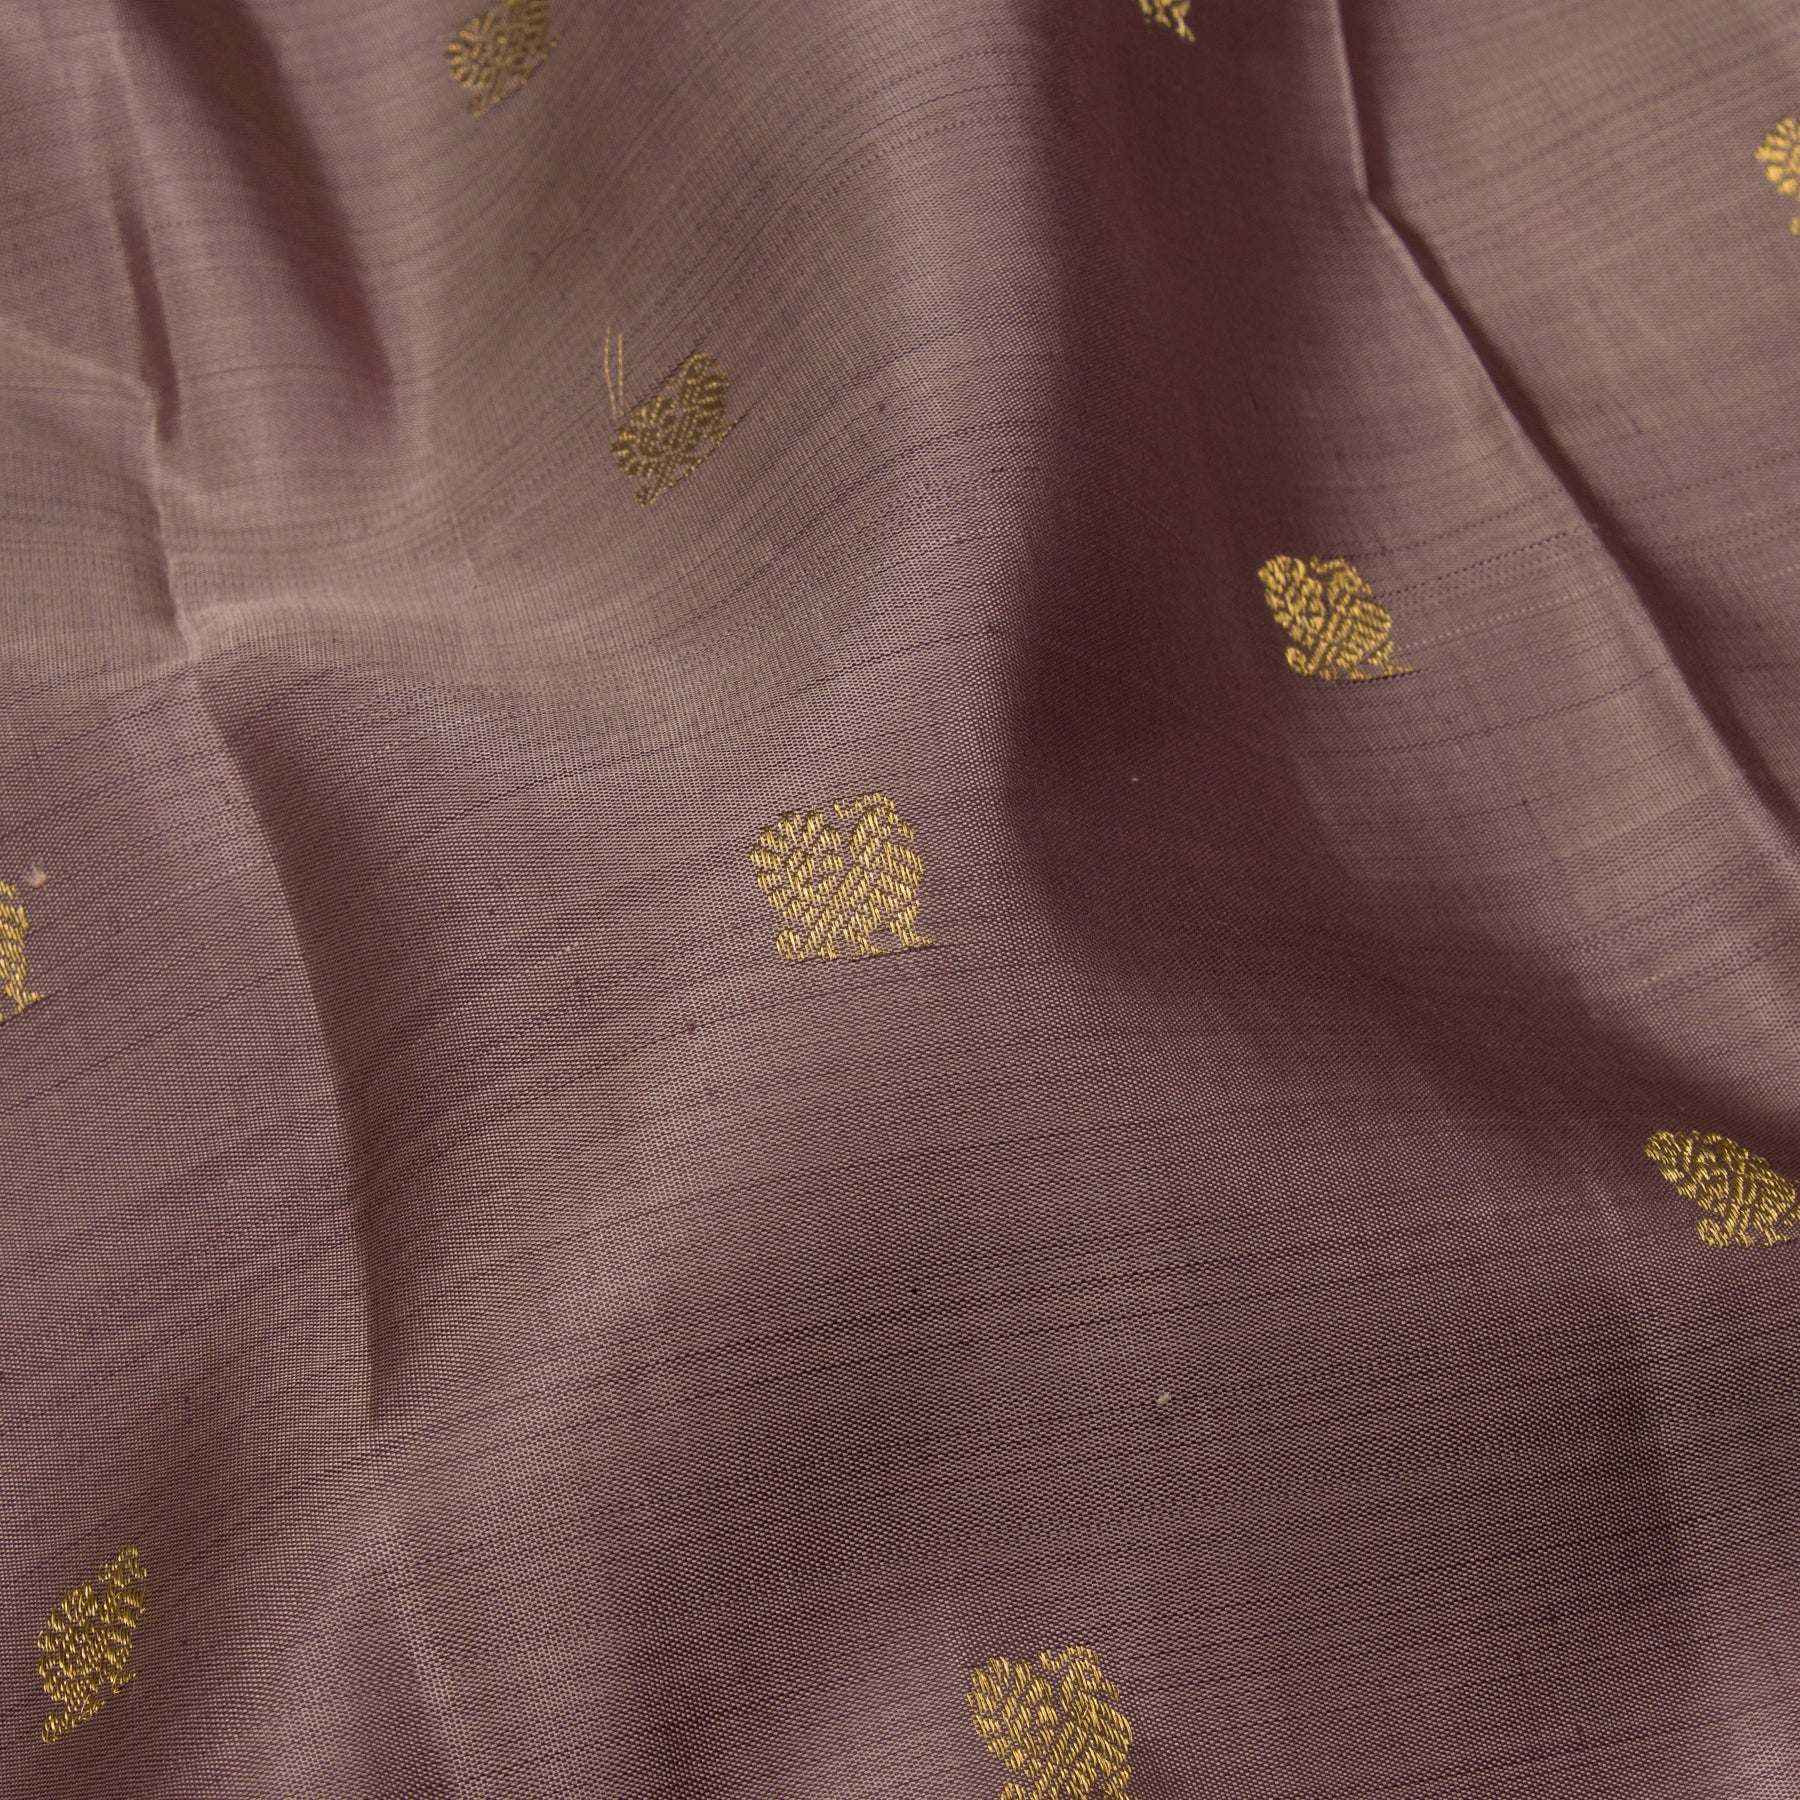 Kanakavalli Kanjivaram Silk Sari 23-595-HS001-13668 - Fabric View